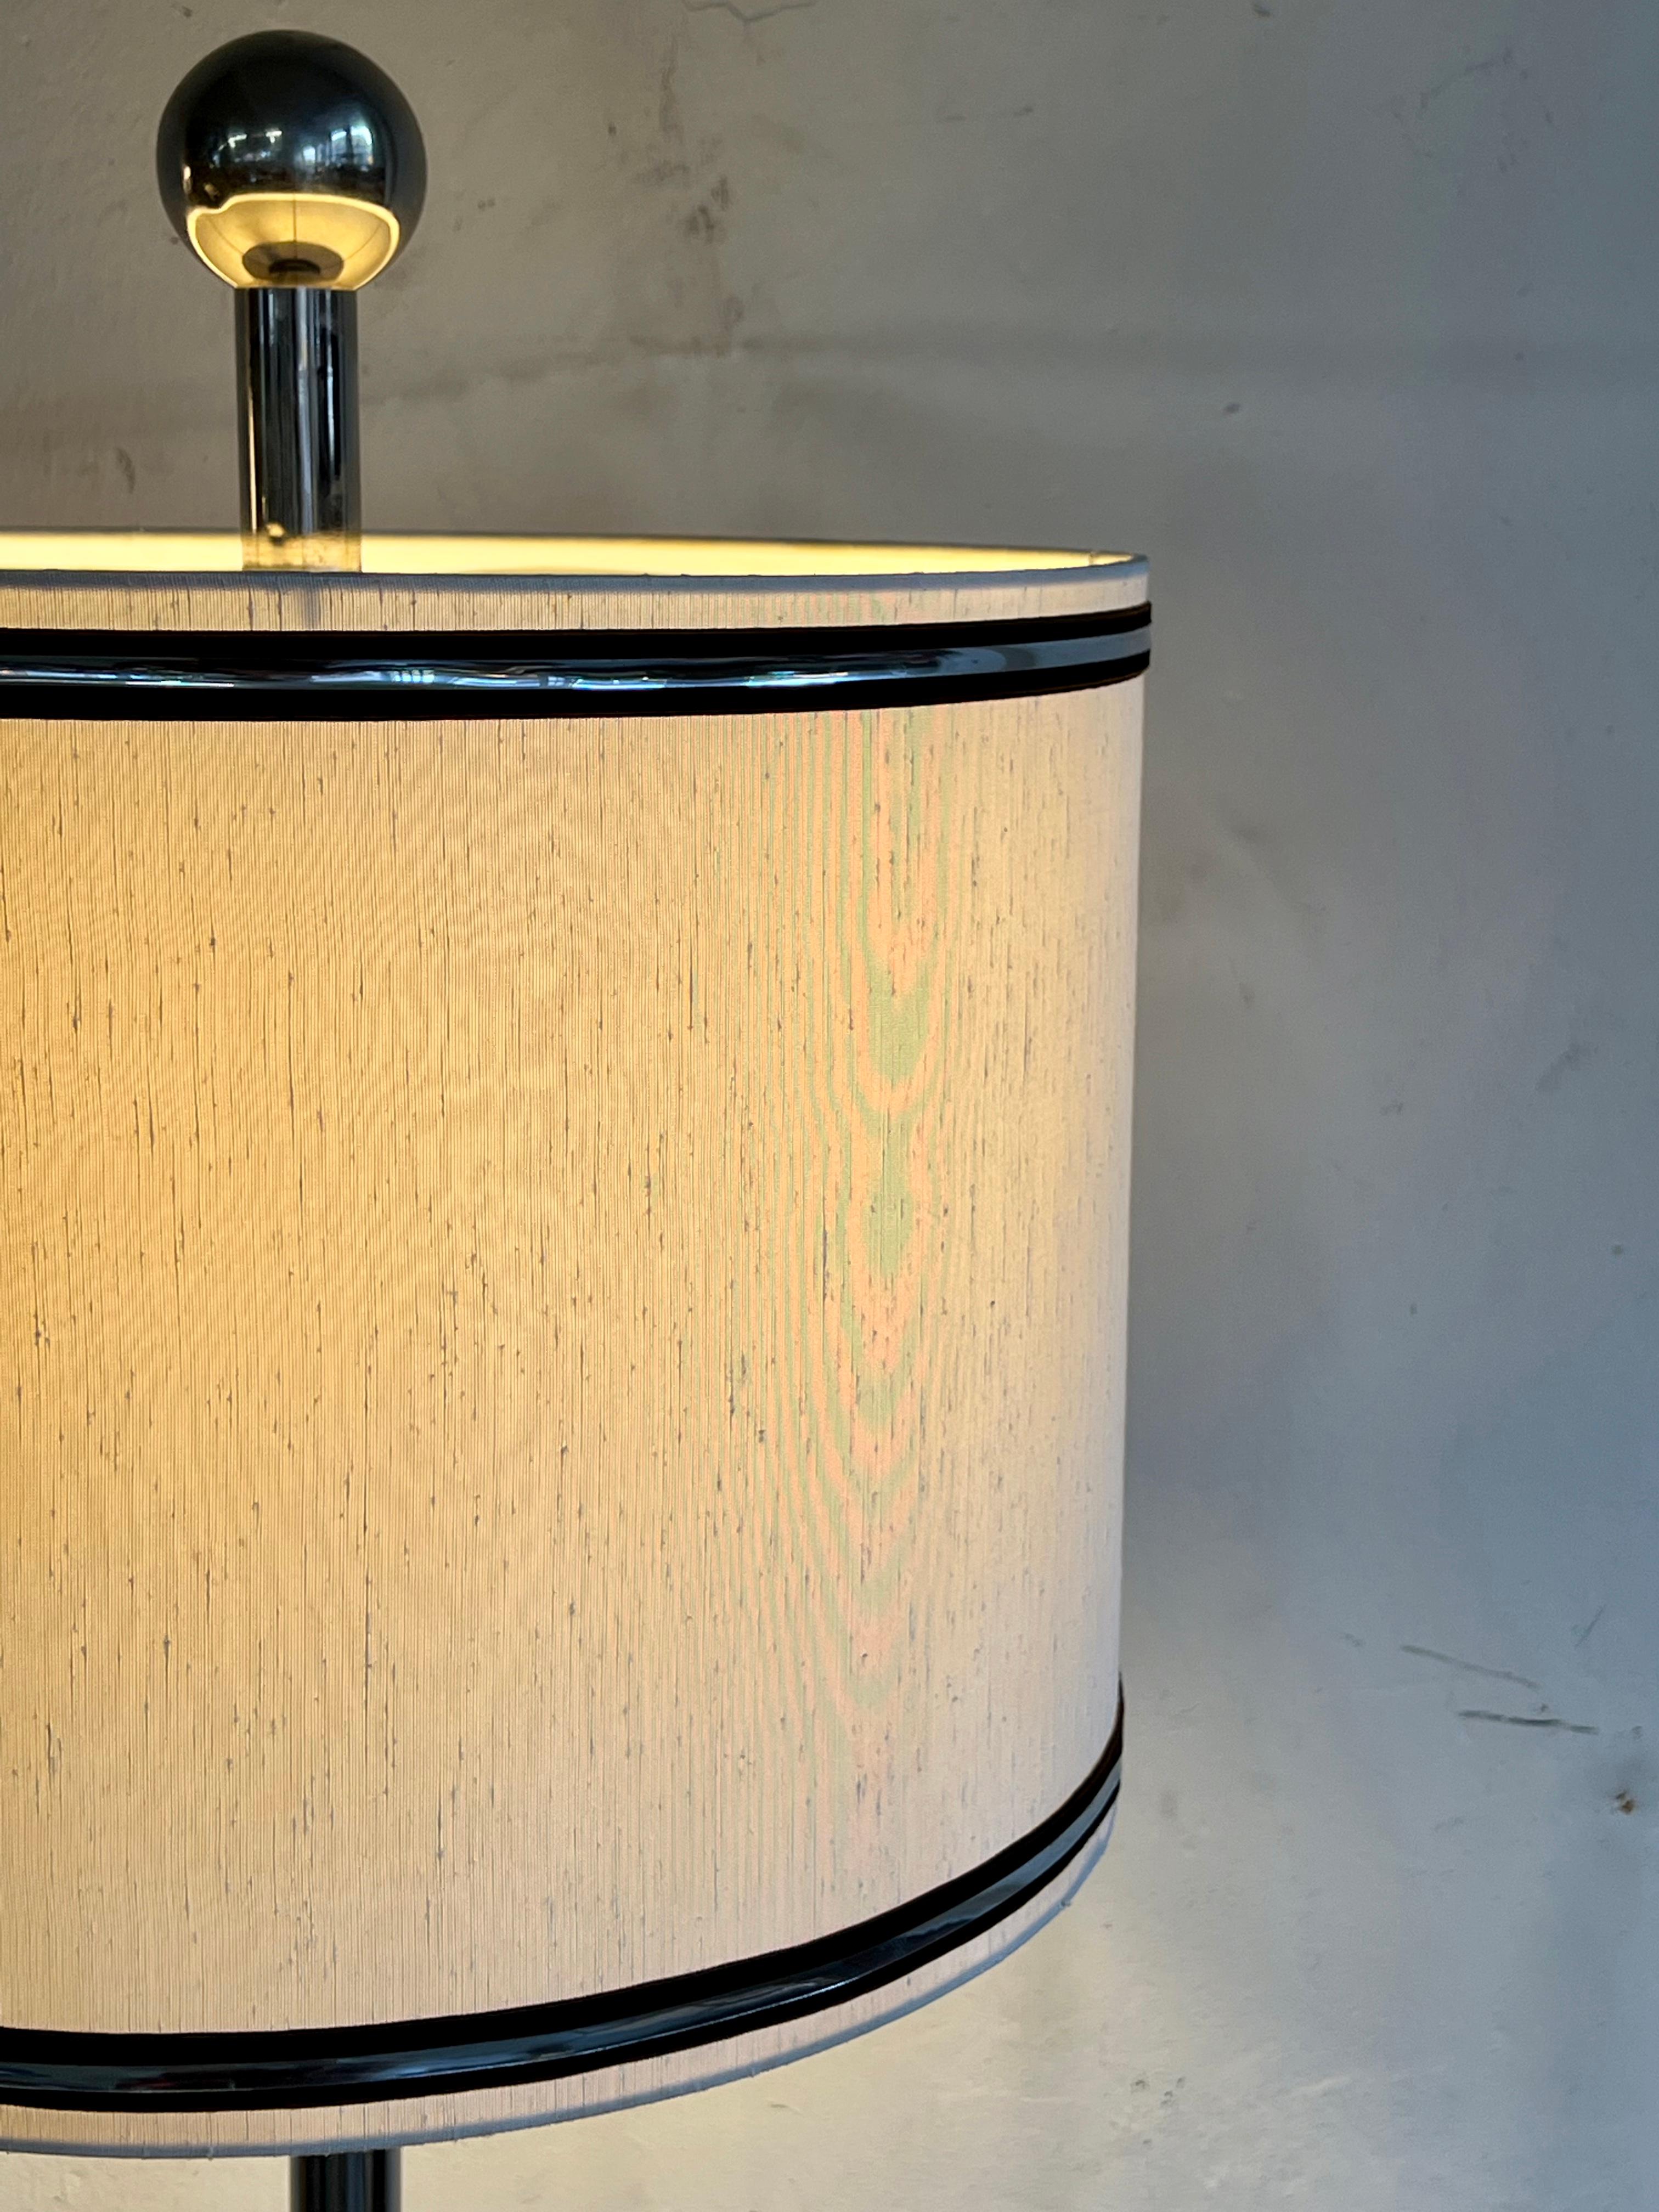 Grande lampe de table des années 60 à l'allure élégante. Probablement de fabrication allemande.
 
L'abat-jour en soie d'origine repose sur une solide base chromée et est orné d'une bande chromée. Au-dessus de l'abat-jour se trouve un diffuseur en